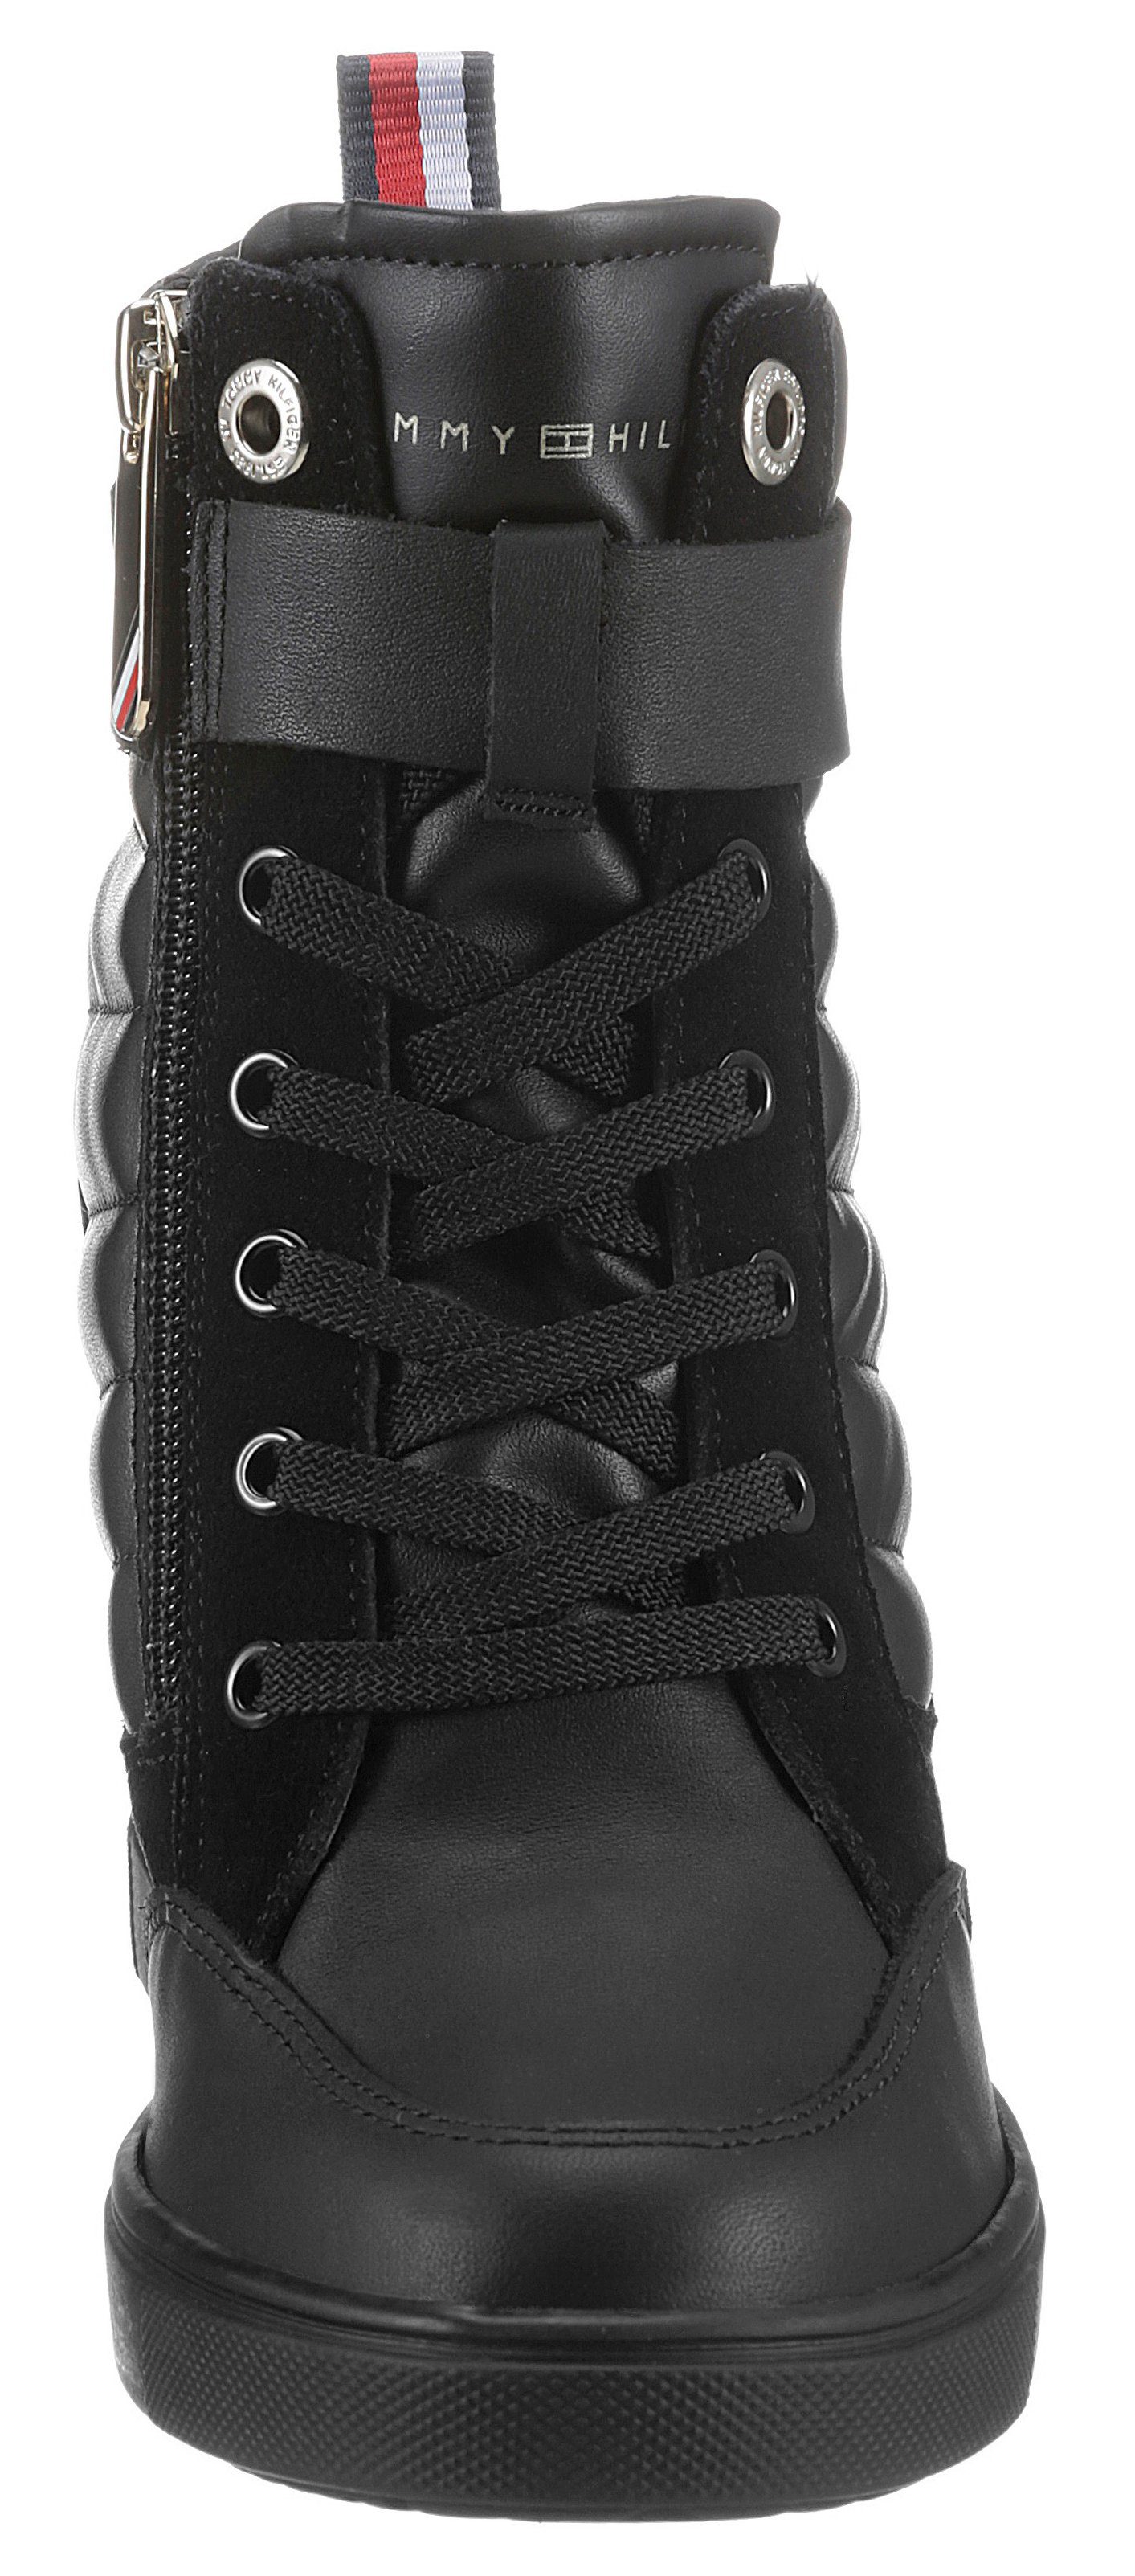 SNEAKER BOOT Tommy Keilsneaker mit innenliegendem Hilfiger Keilabsatz schwarz WEDGE